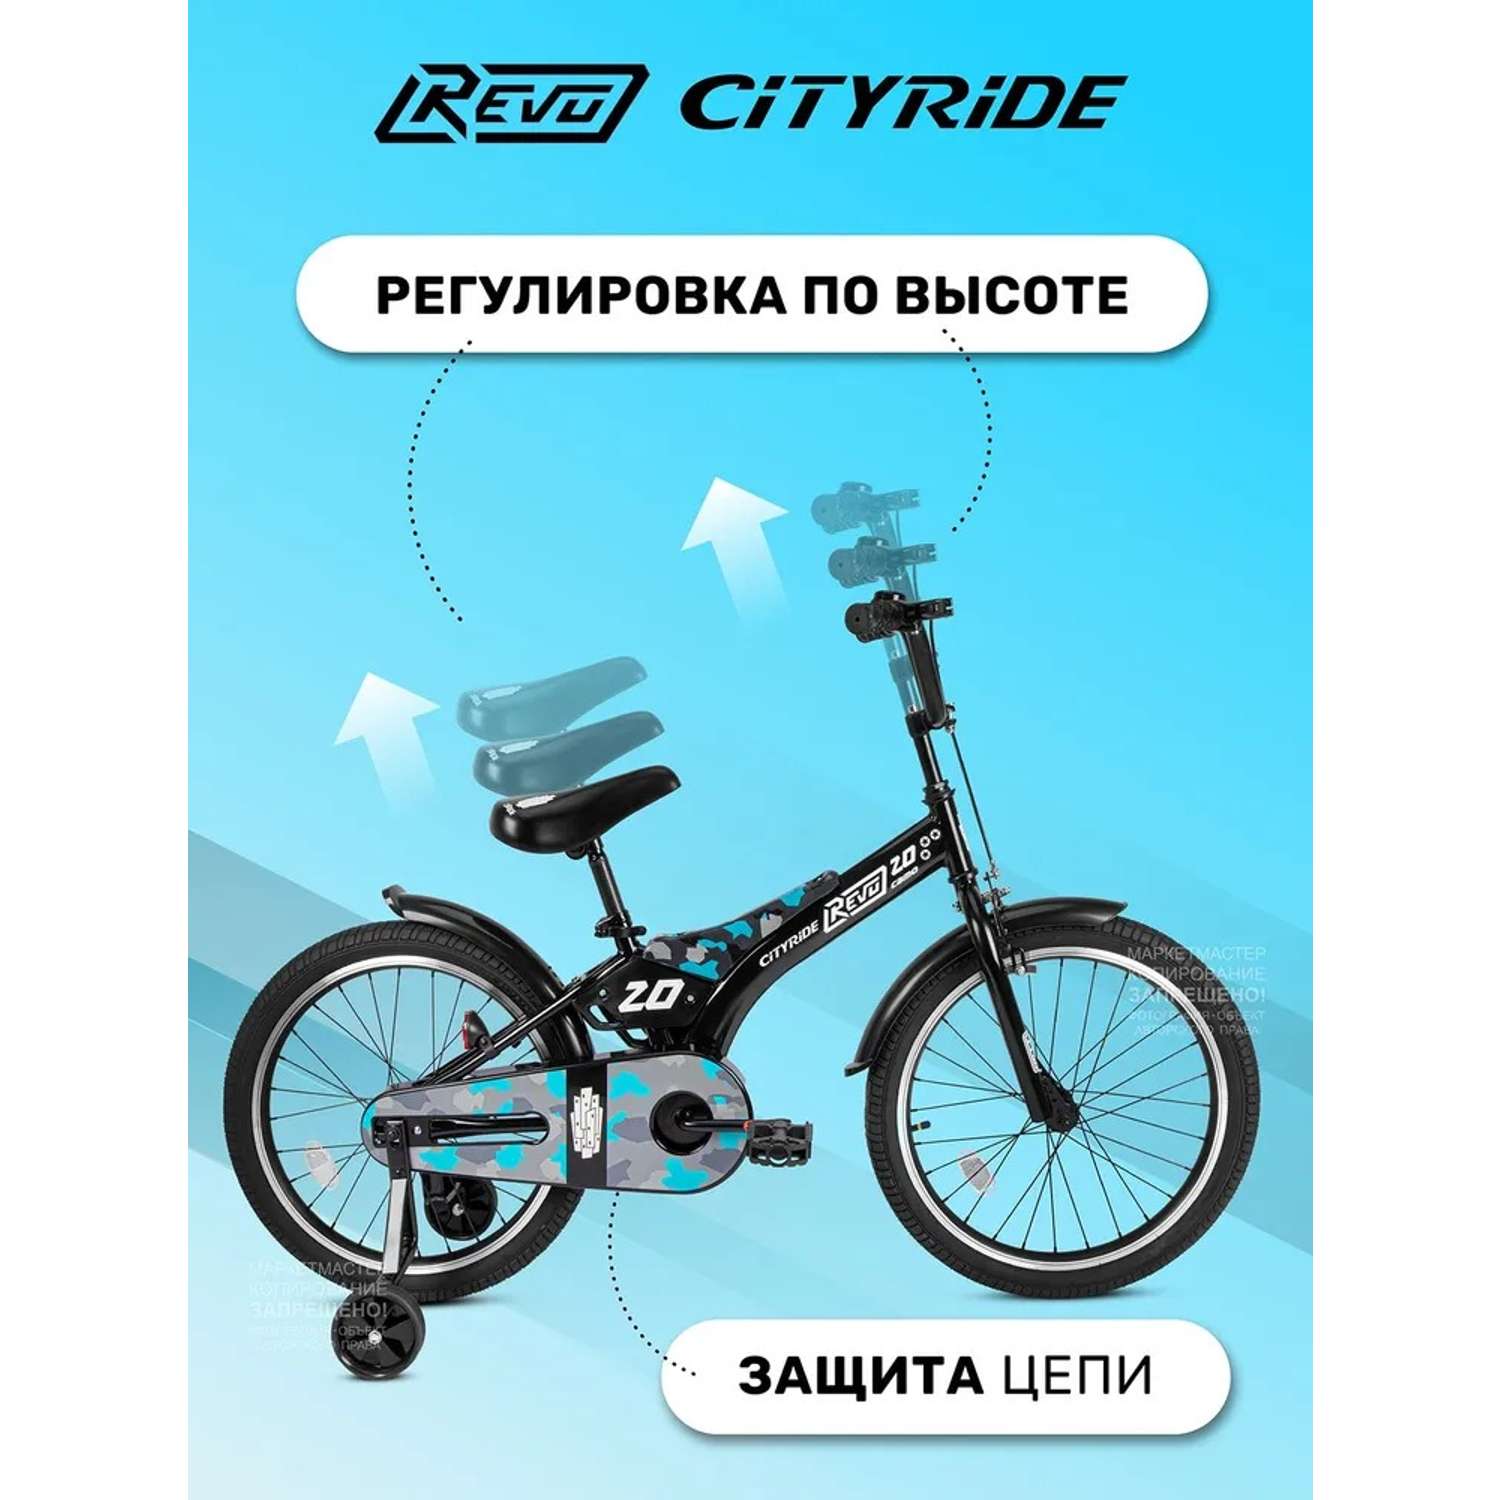 Детский велосипед CITYRIDE Двухколесный Cityride REVO Рама сталь Кожух цепи 100% Диски алюминий 20 Втулки сталь - фото 2